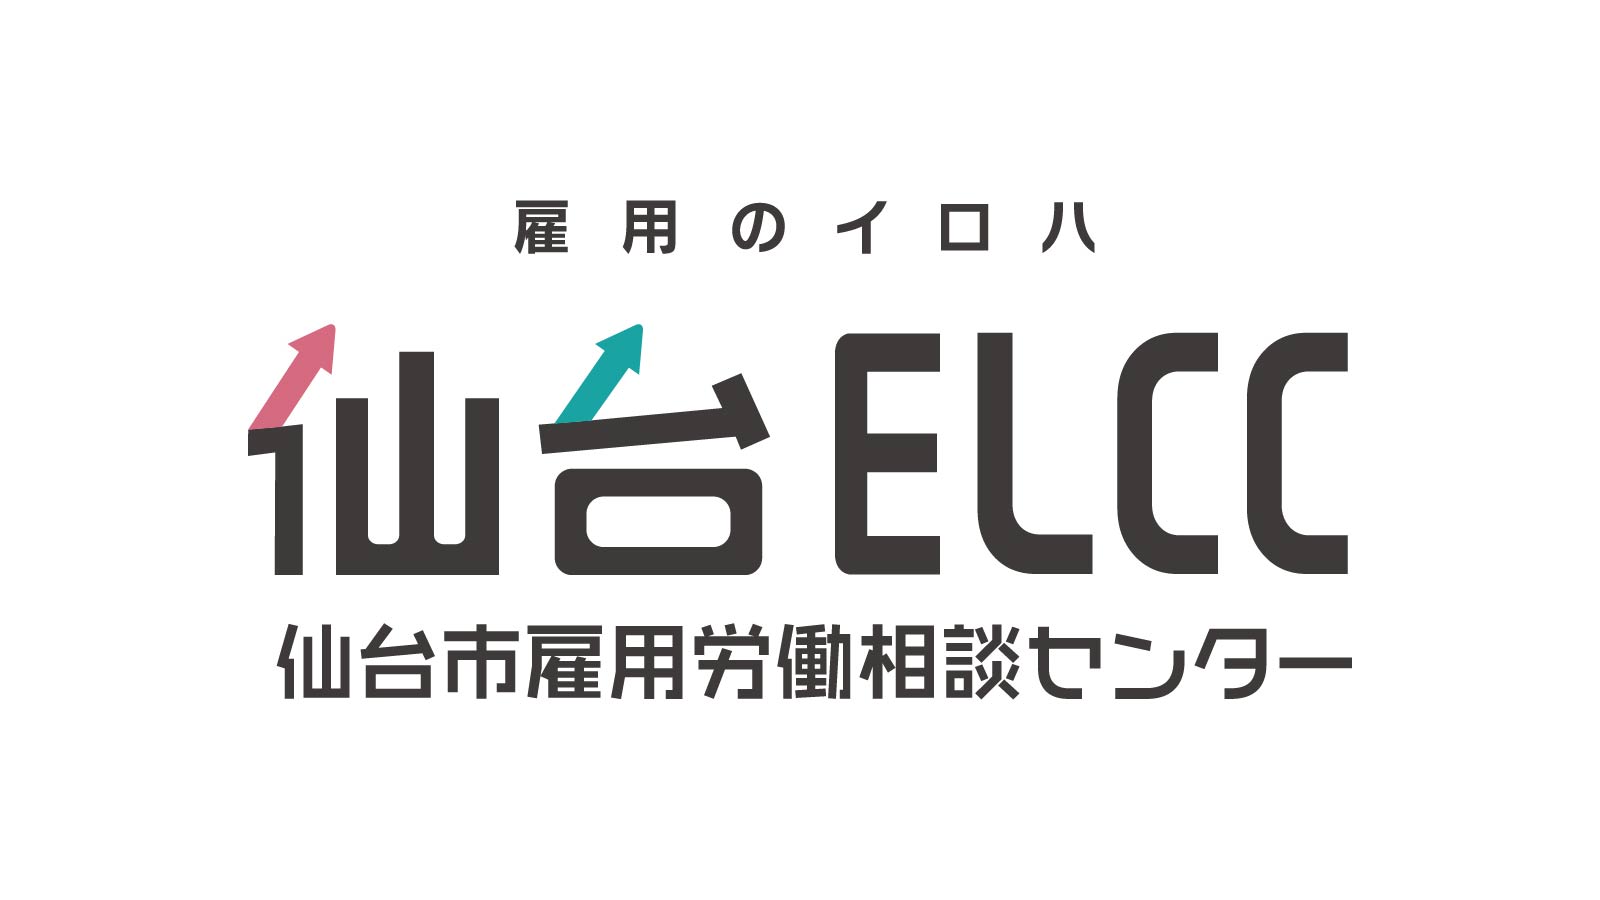 仙台ELCC 主催セミナー 「労働時間の適正管理のために」